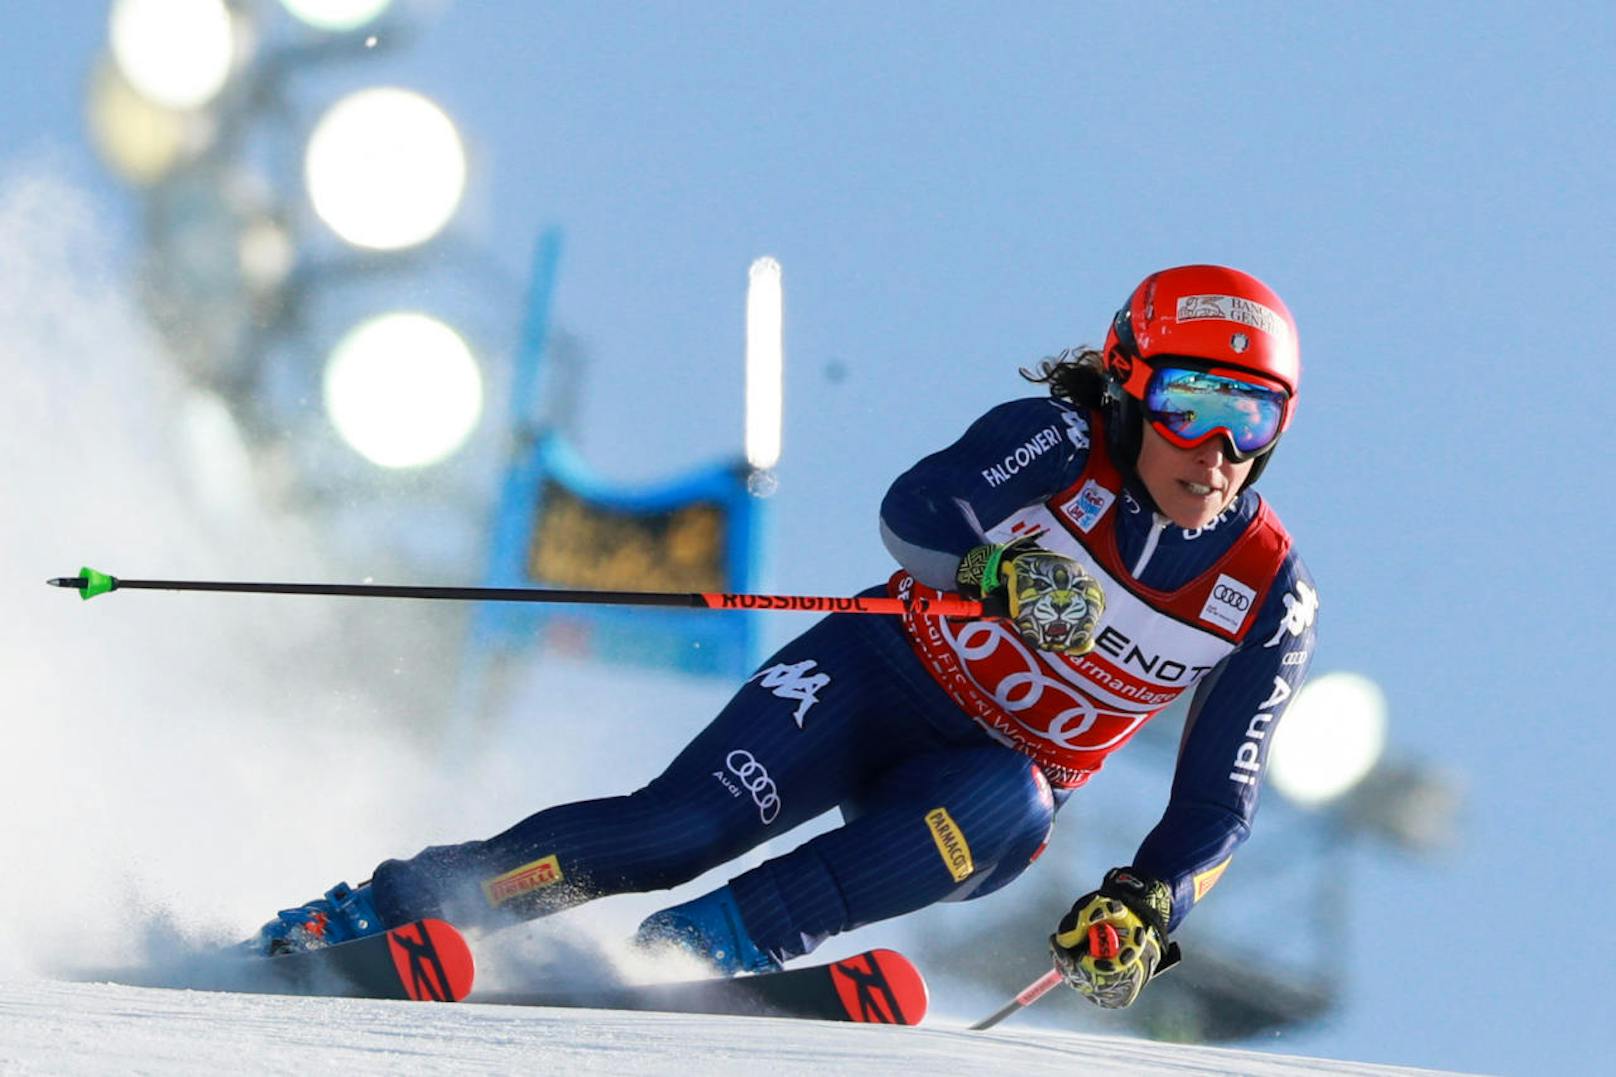 Danach reisten die Ski-Damen nach Sestriere weiter. Im Riesentorlauf gab es gleich zwei Siegerinnen. Petra Vlhova (Svk) siegte zeitgleich mit Federica Brignone (It). Um nur eine Hundertstel geschlagen: Mikaela Shiffrin (US). Schwer geschlagen wurden die Österreicherinnen. Katharina Liensberger wurde 17. und somit beste ÖSV-Dame.